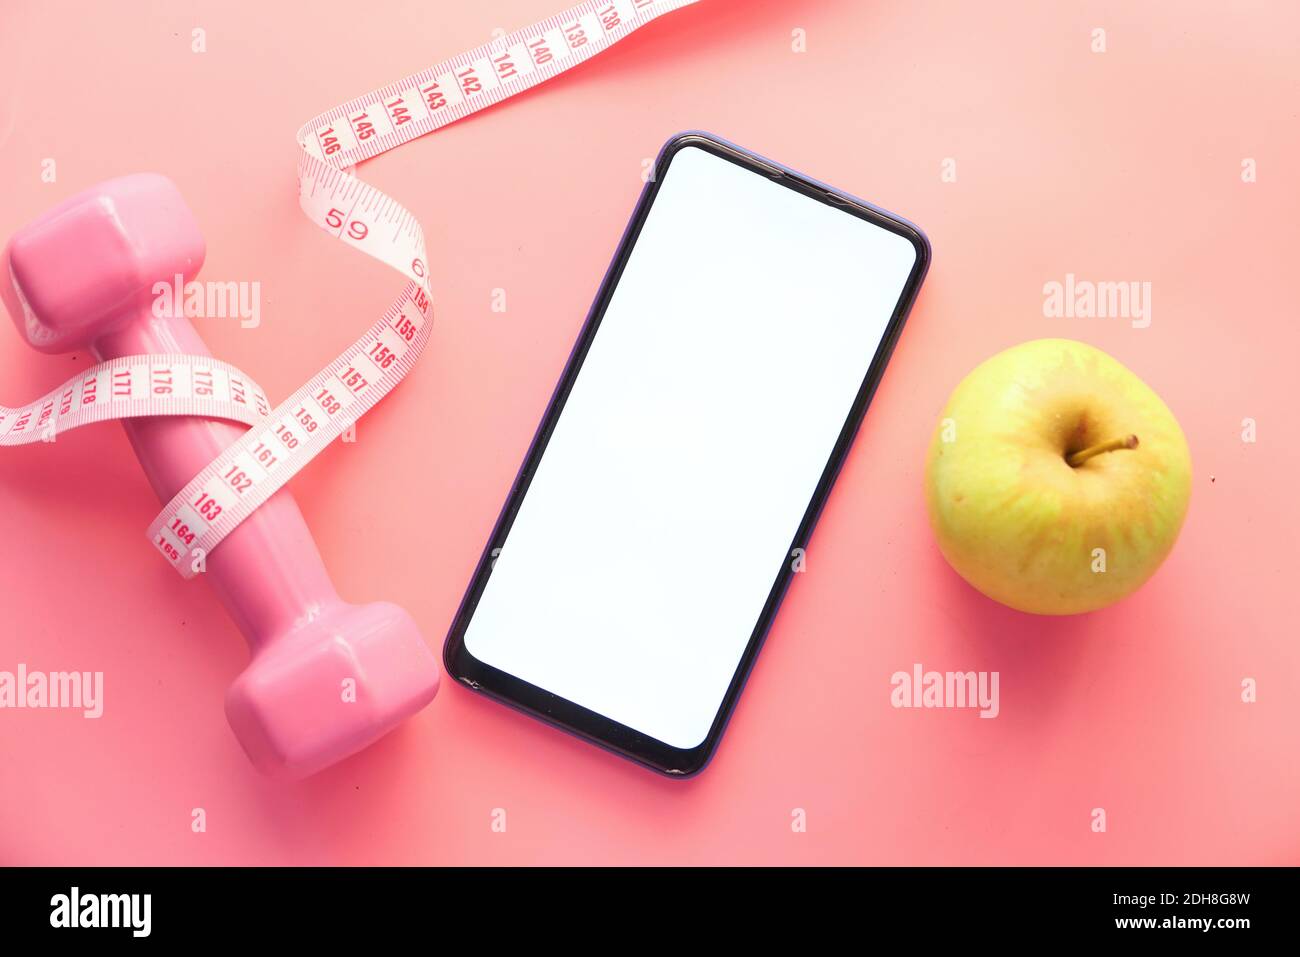 concetto di dieta sana con smartphone, mela e manubri su sfondo rosa Foto  stock - Alamy